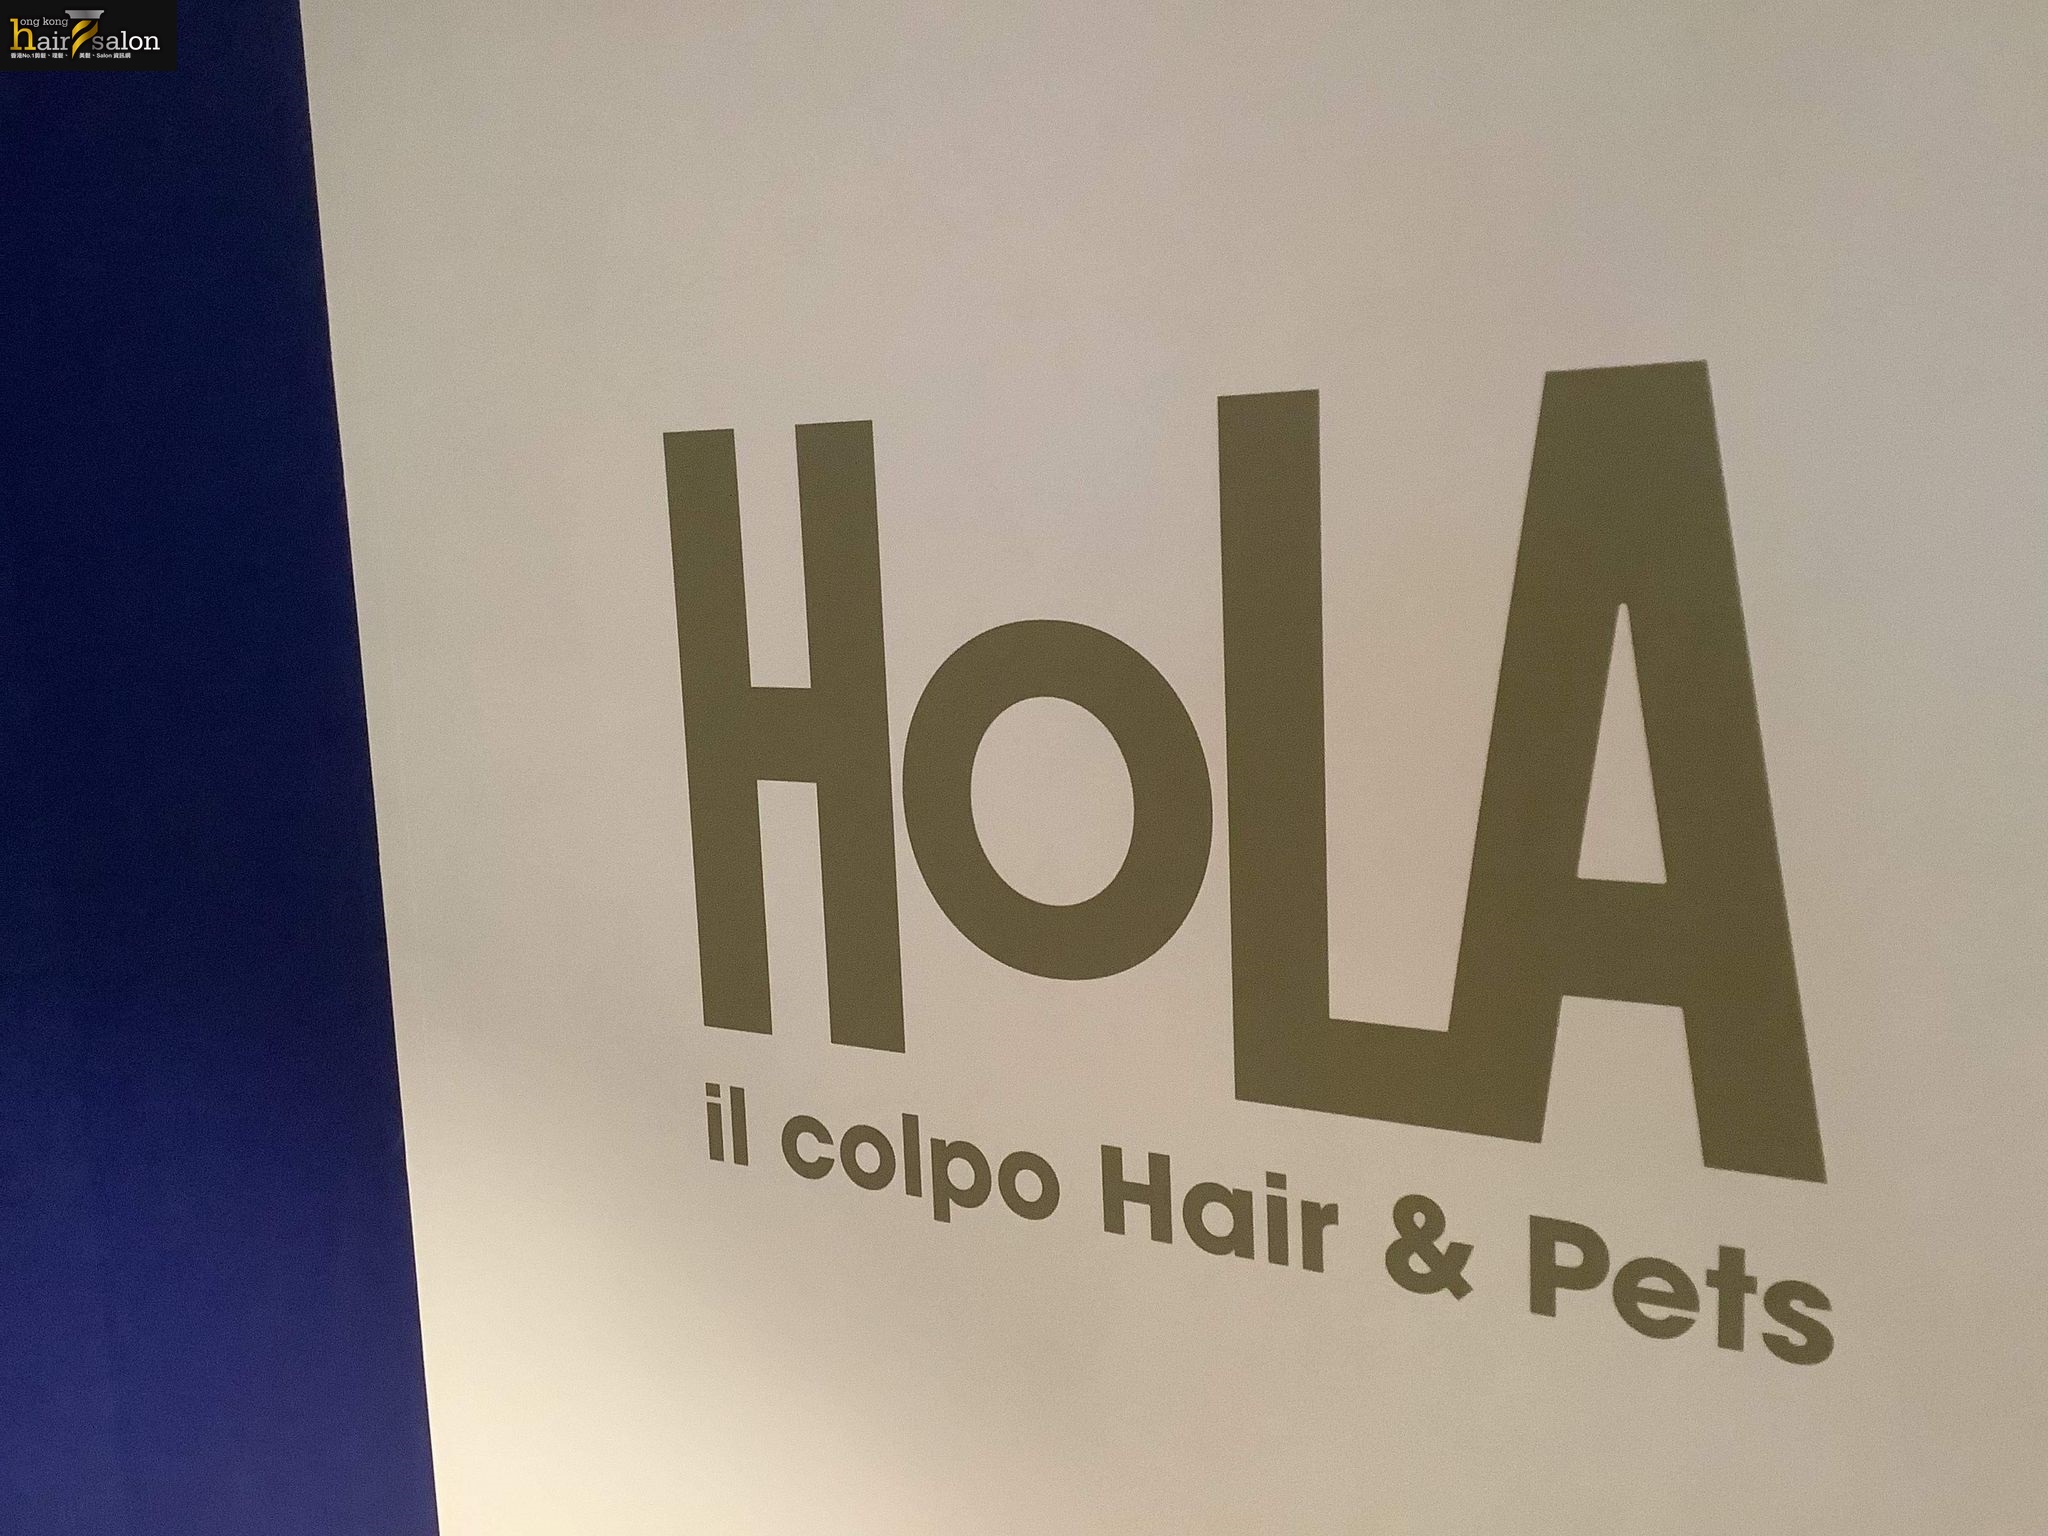 染髮: Hola il Colpo hairs & pets